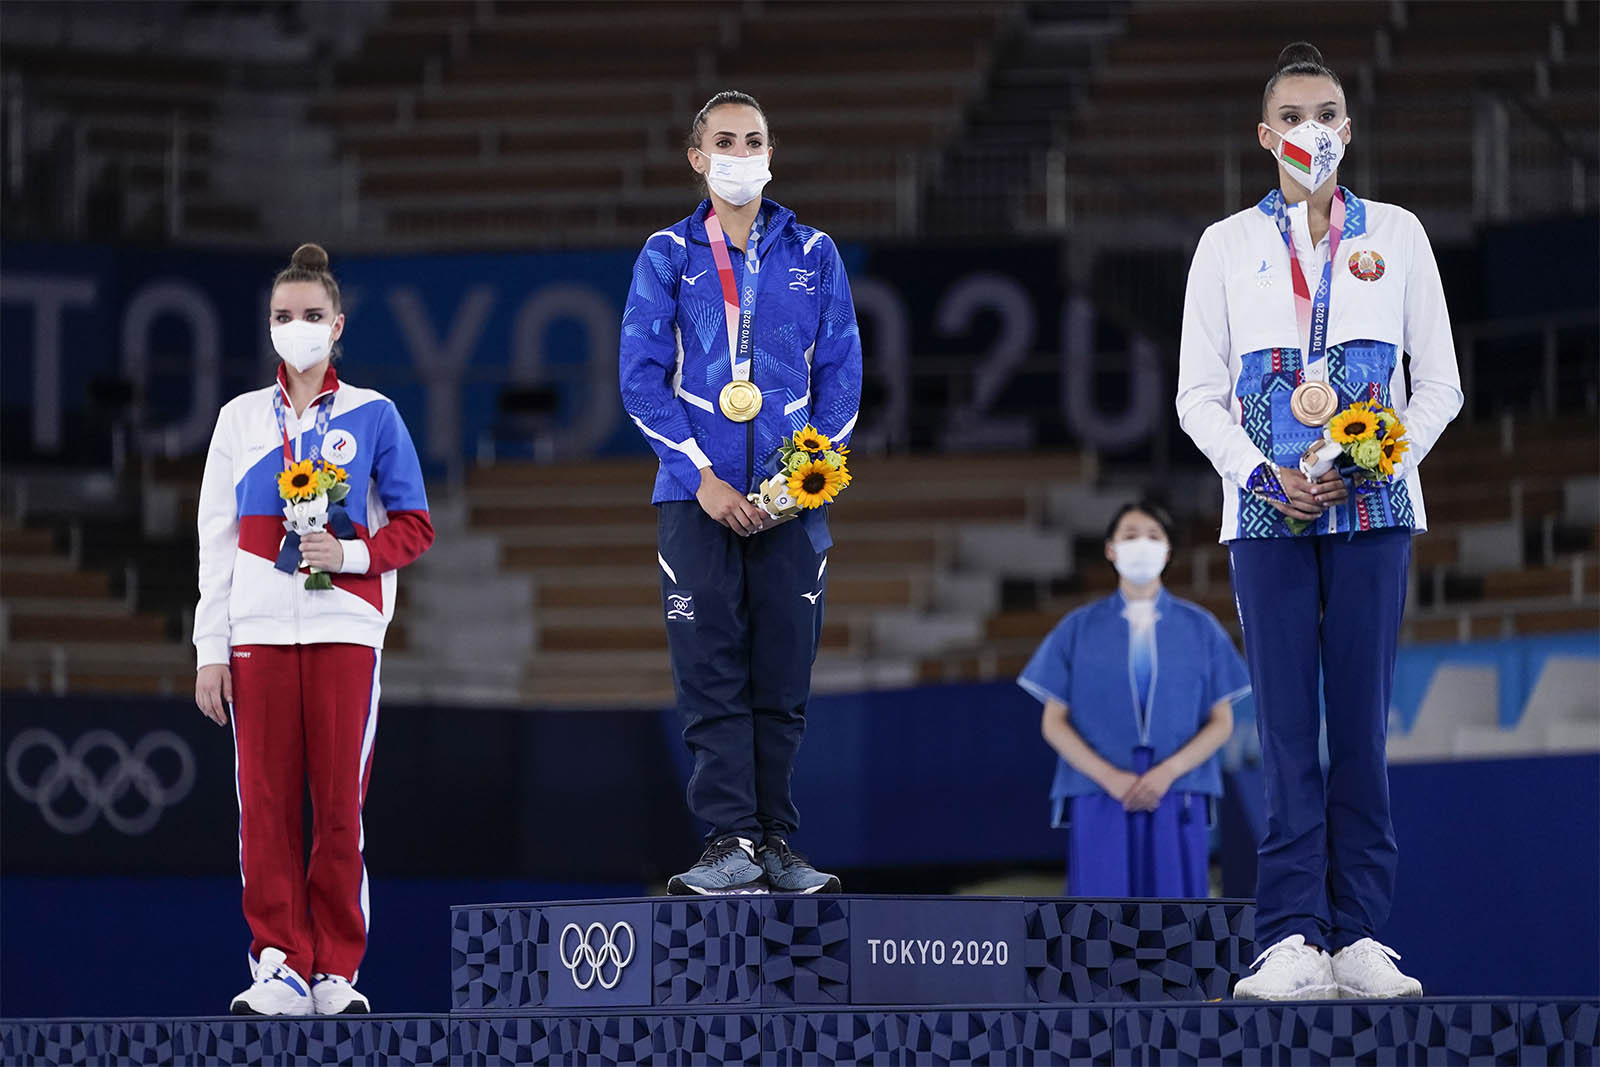 לינוי אשרם (במרכז) מקבלת את מדליית הזהב בקרב-רב במשחקים האולימפיים בטוקיו. משמאל: דינה אברינה (רוסיה) שזכתה במדליית הכסף, ומימין אלינה הרנסקו (בלרוס) שזכתה במדליית הארד (AP Photo/Ashley Landis)
